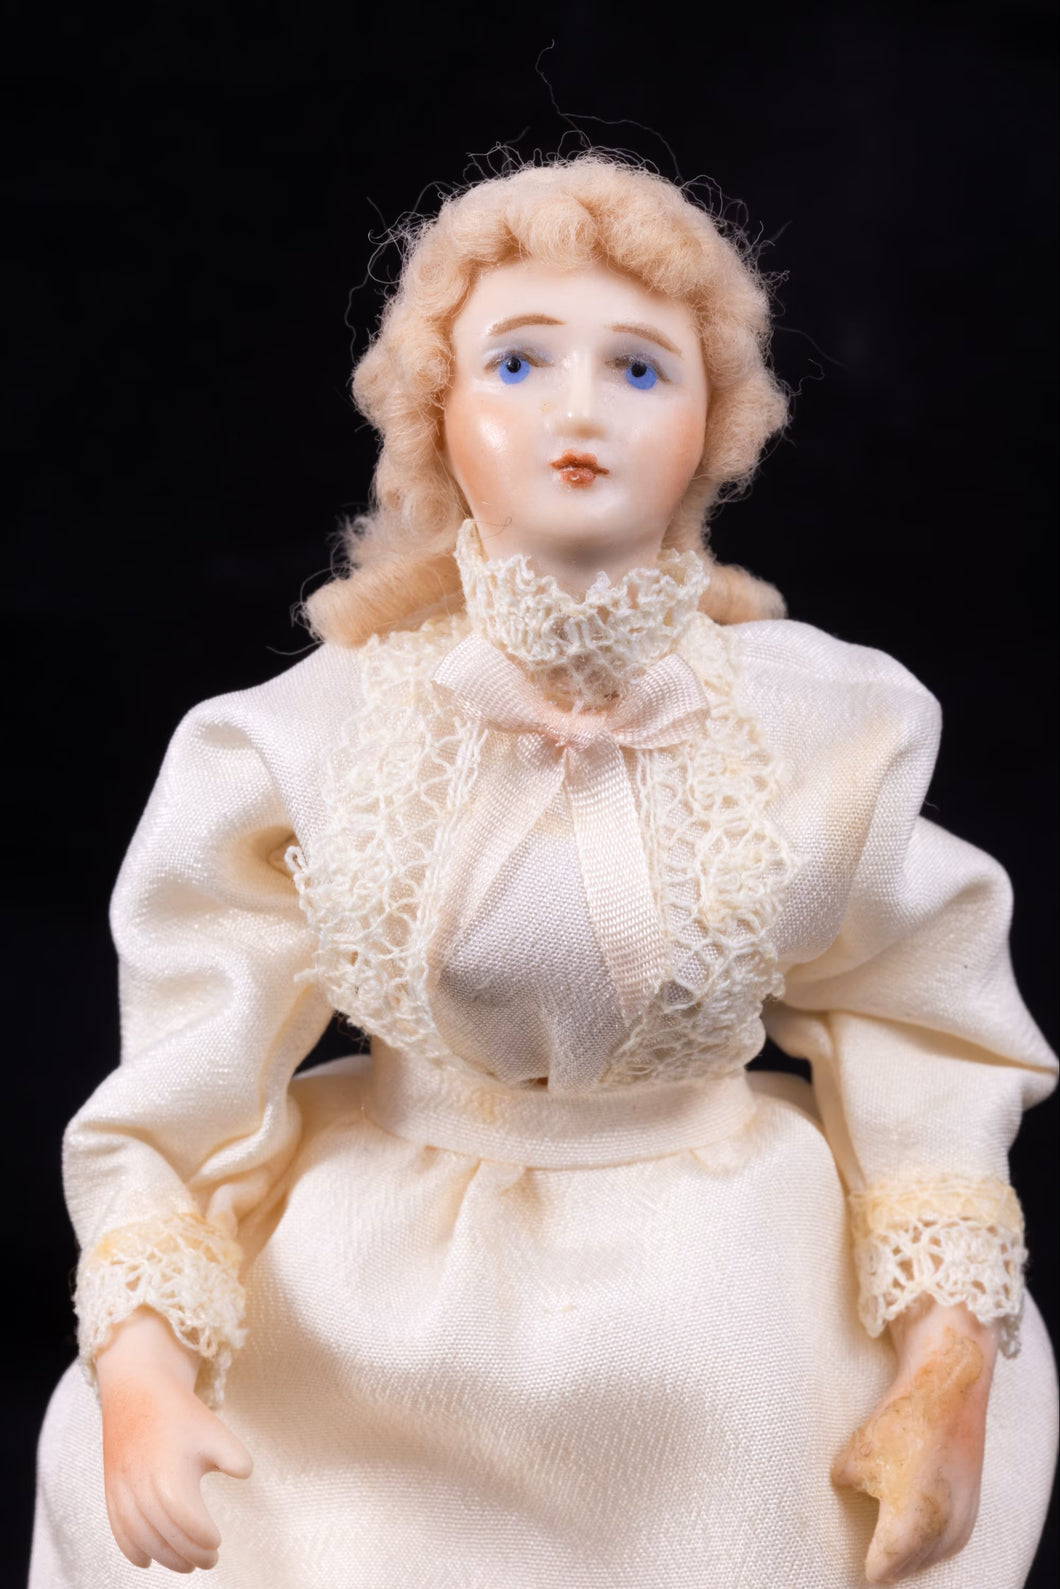 Handmade Porcelain Doll - Vintage